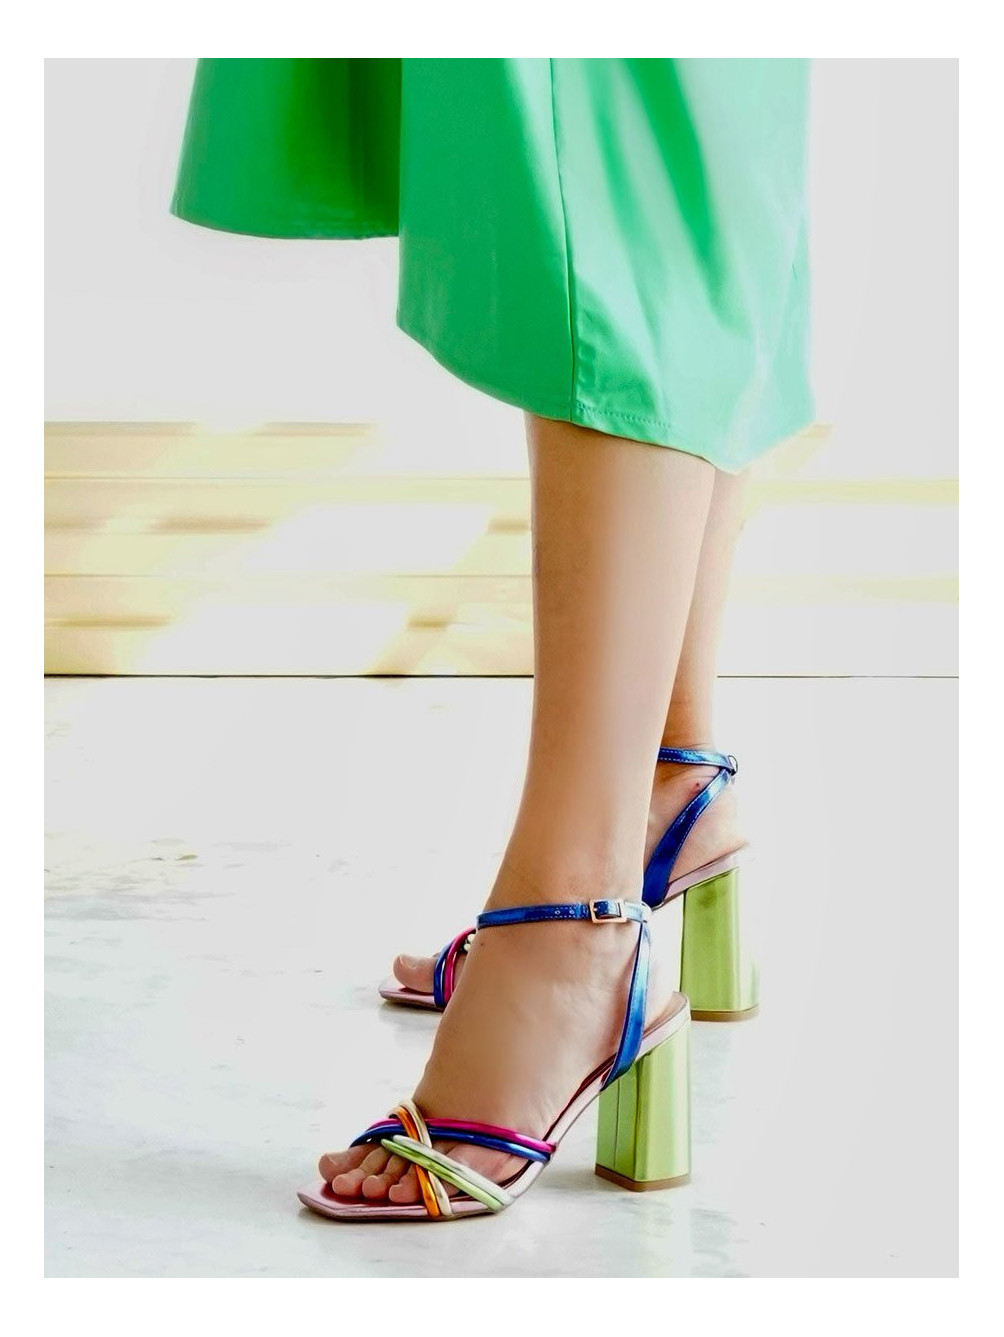 Sandalia Colores Sam, Sandalias de Mujer, Zapatos de Mujer, Mariquita Trasquilá